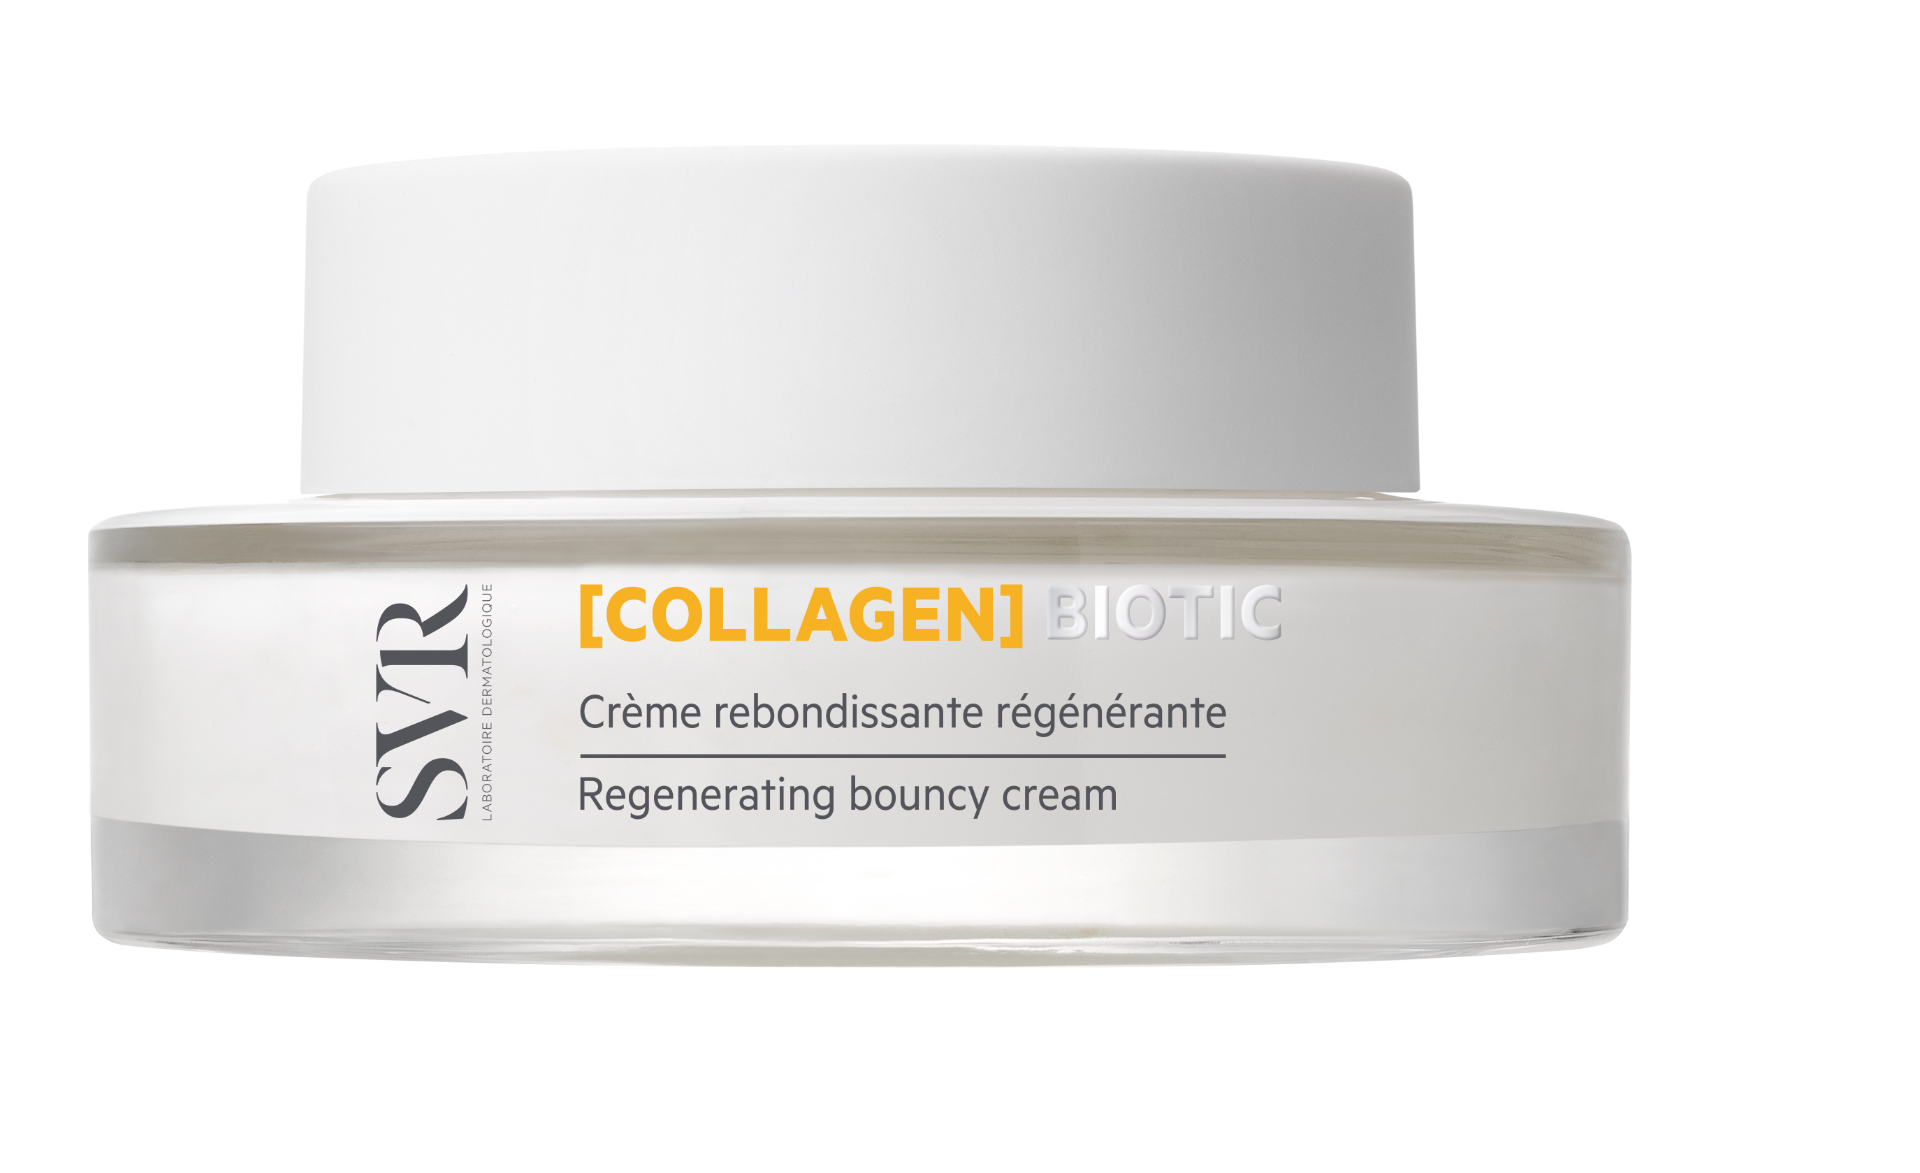 цена SVR Collagene Biotic дневной крем против морщин, 50 ml